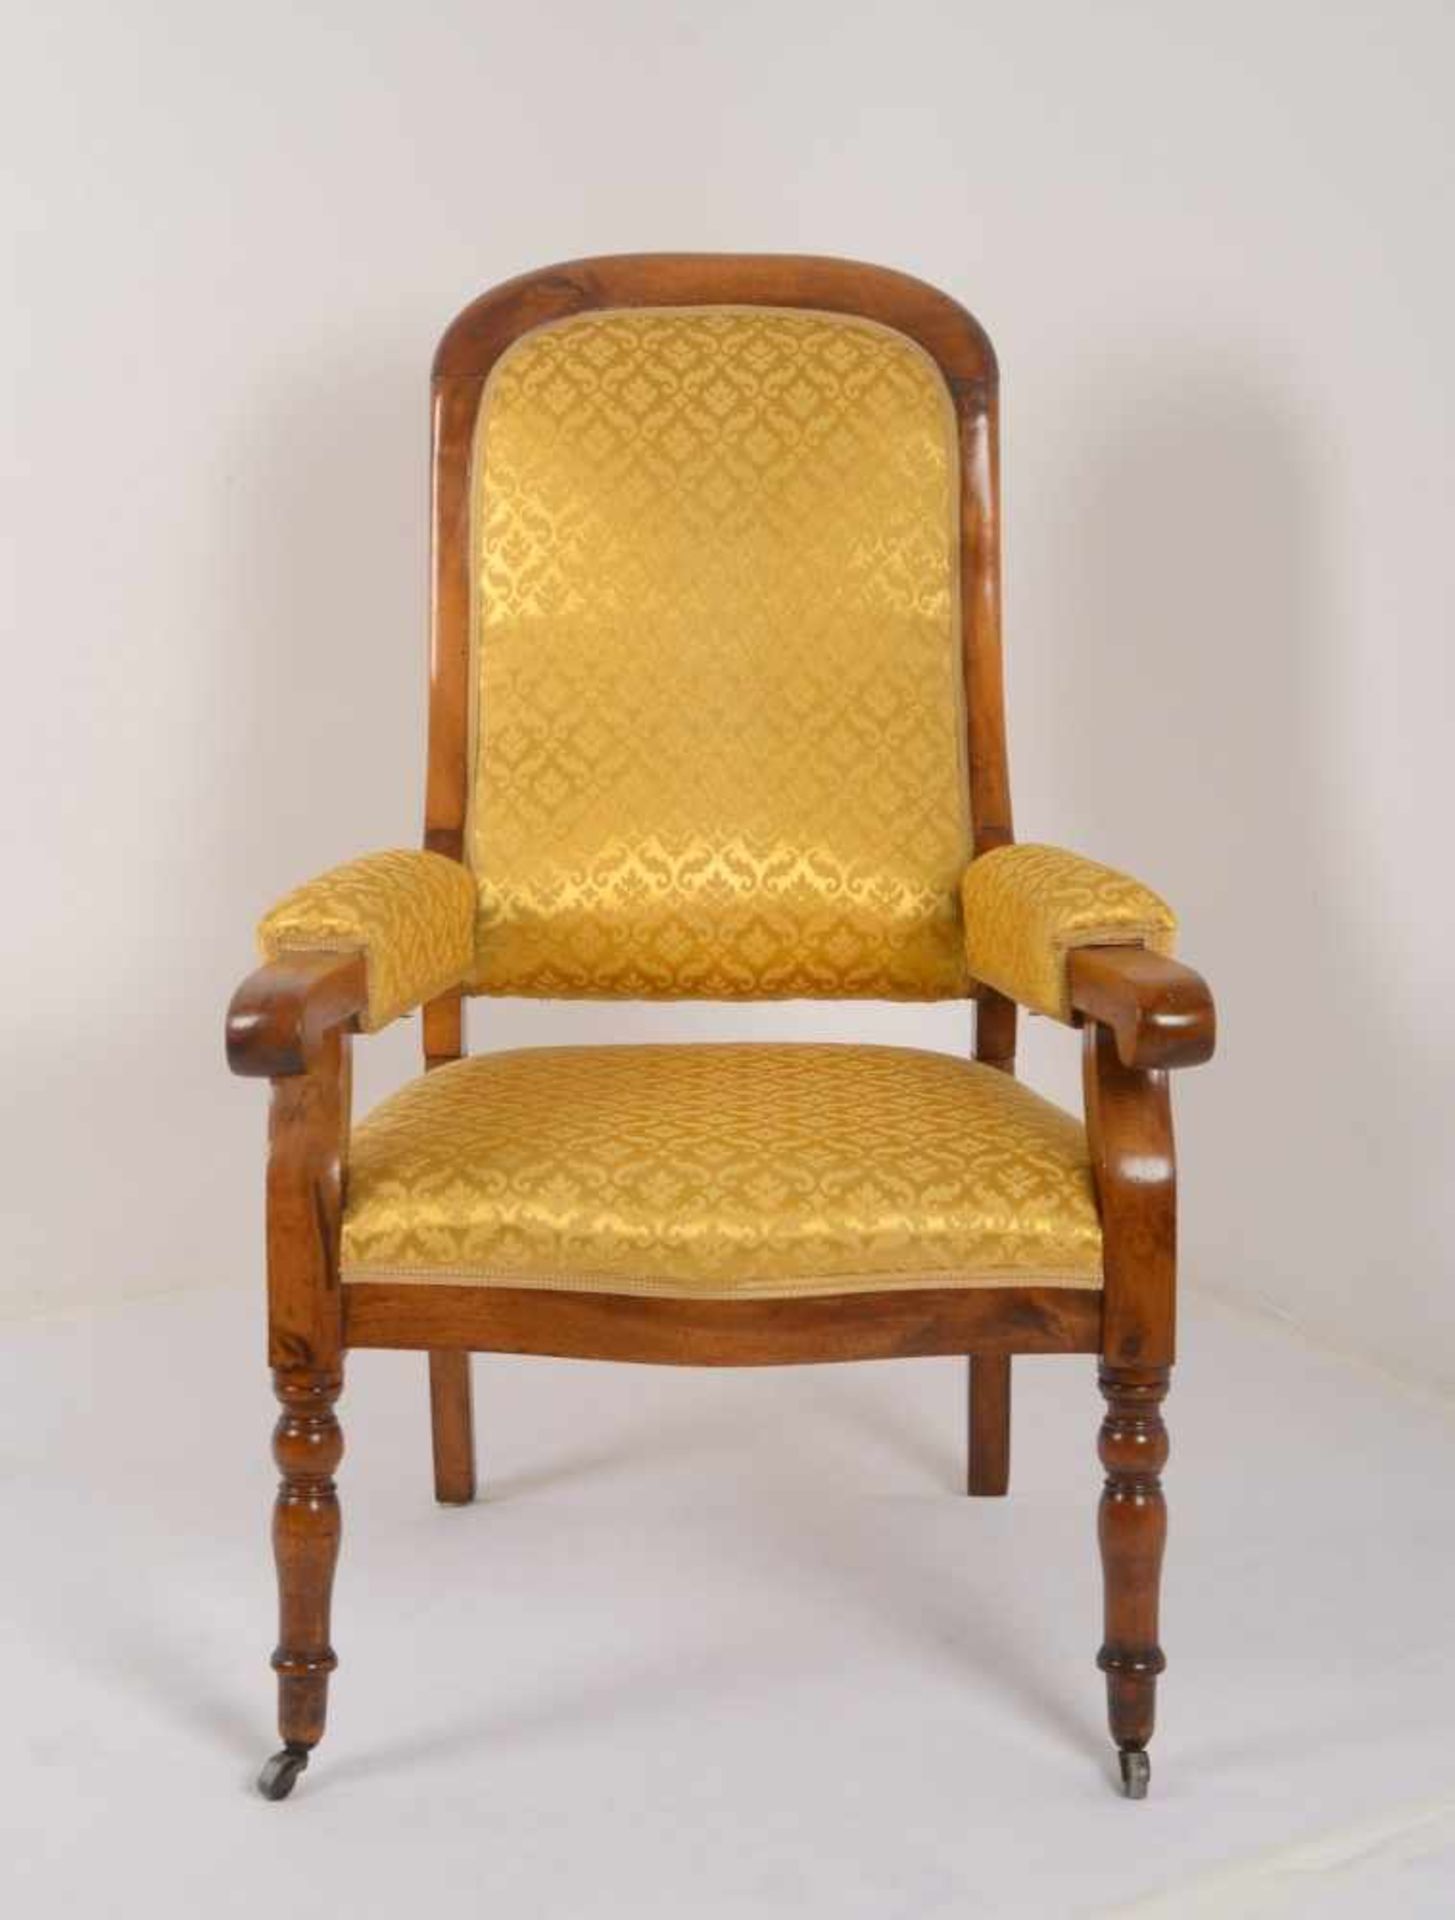 Armlehnstuhl, Nussbaum, Armlehnen/Rückenlehne und Sitzfläche mit Stoffbezug; Höhe 110 cm, Breite